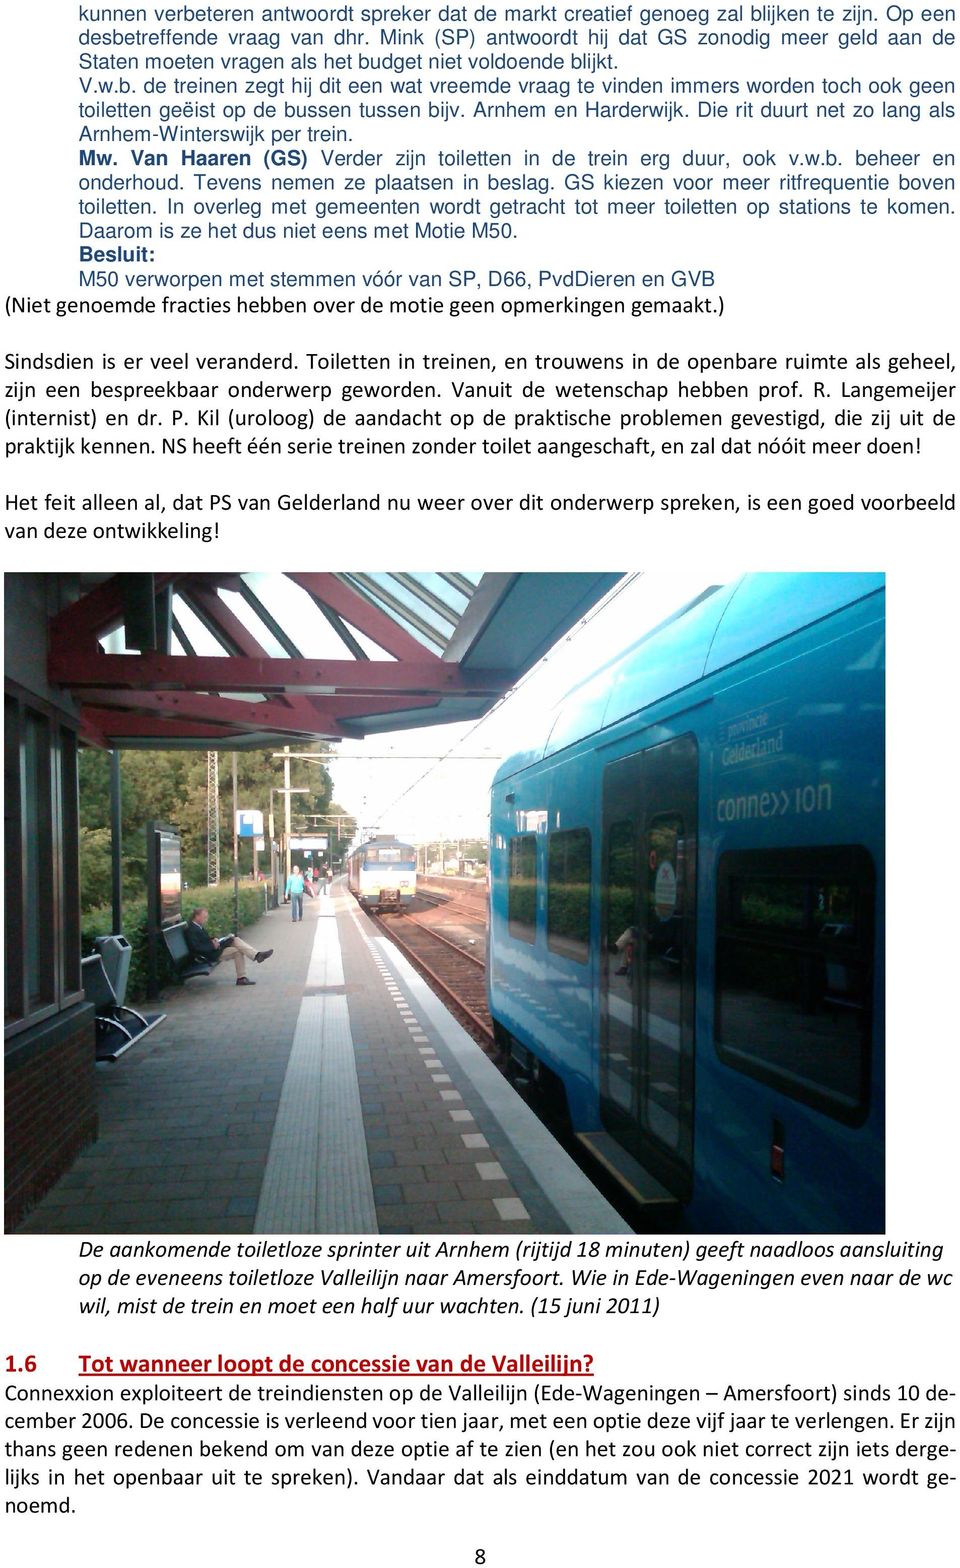 dget niet voldoende blijkt. V.w.b. de treinen zegt hij dit een wat vreemde vraag te vinden immers worden toch ook geen toiletten geëist op de bussen tussen bijv. Arnhem en Harderwijk.